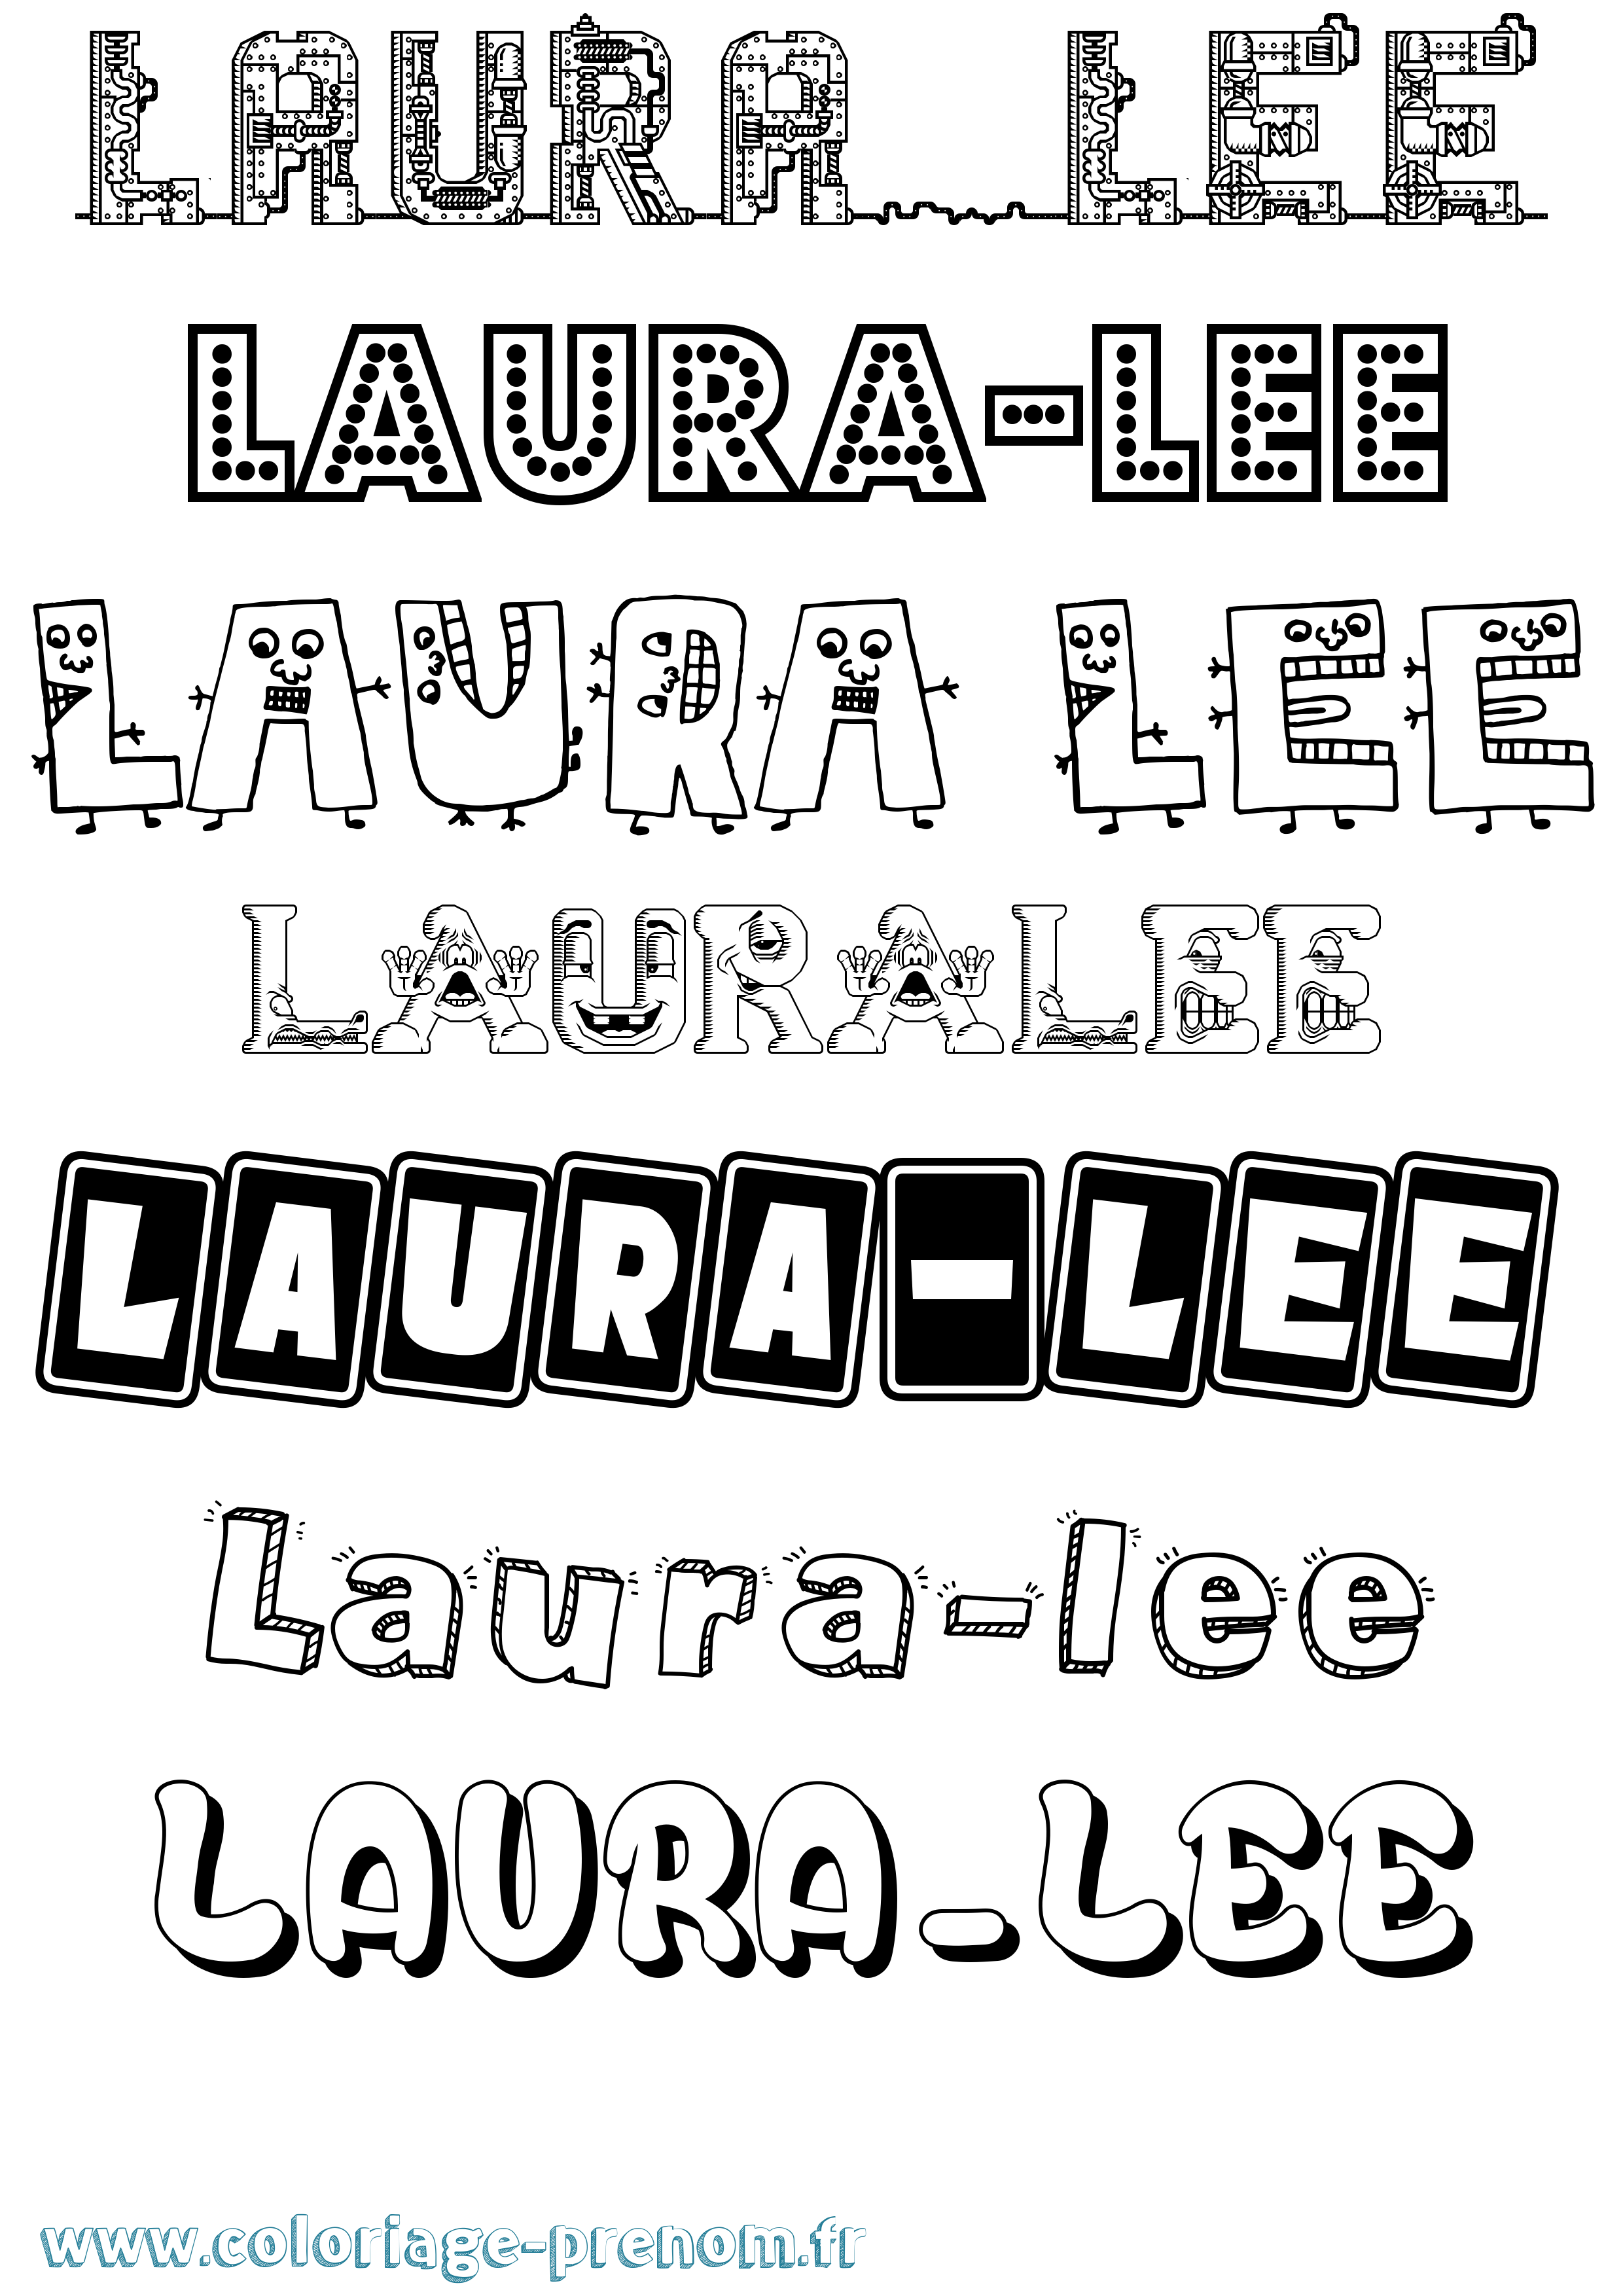 Coloriage prénom Laura-Lee Fun